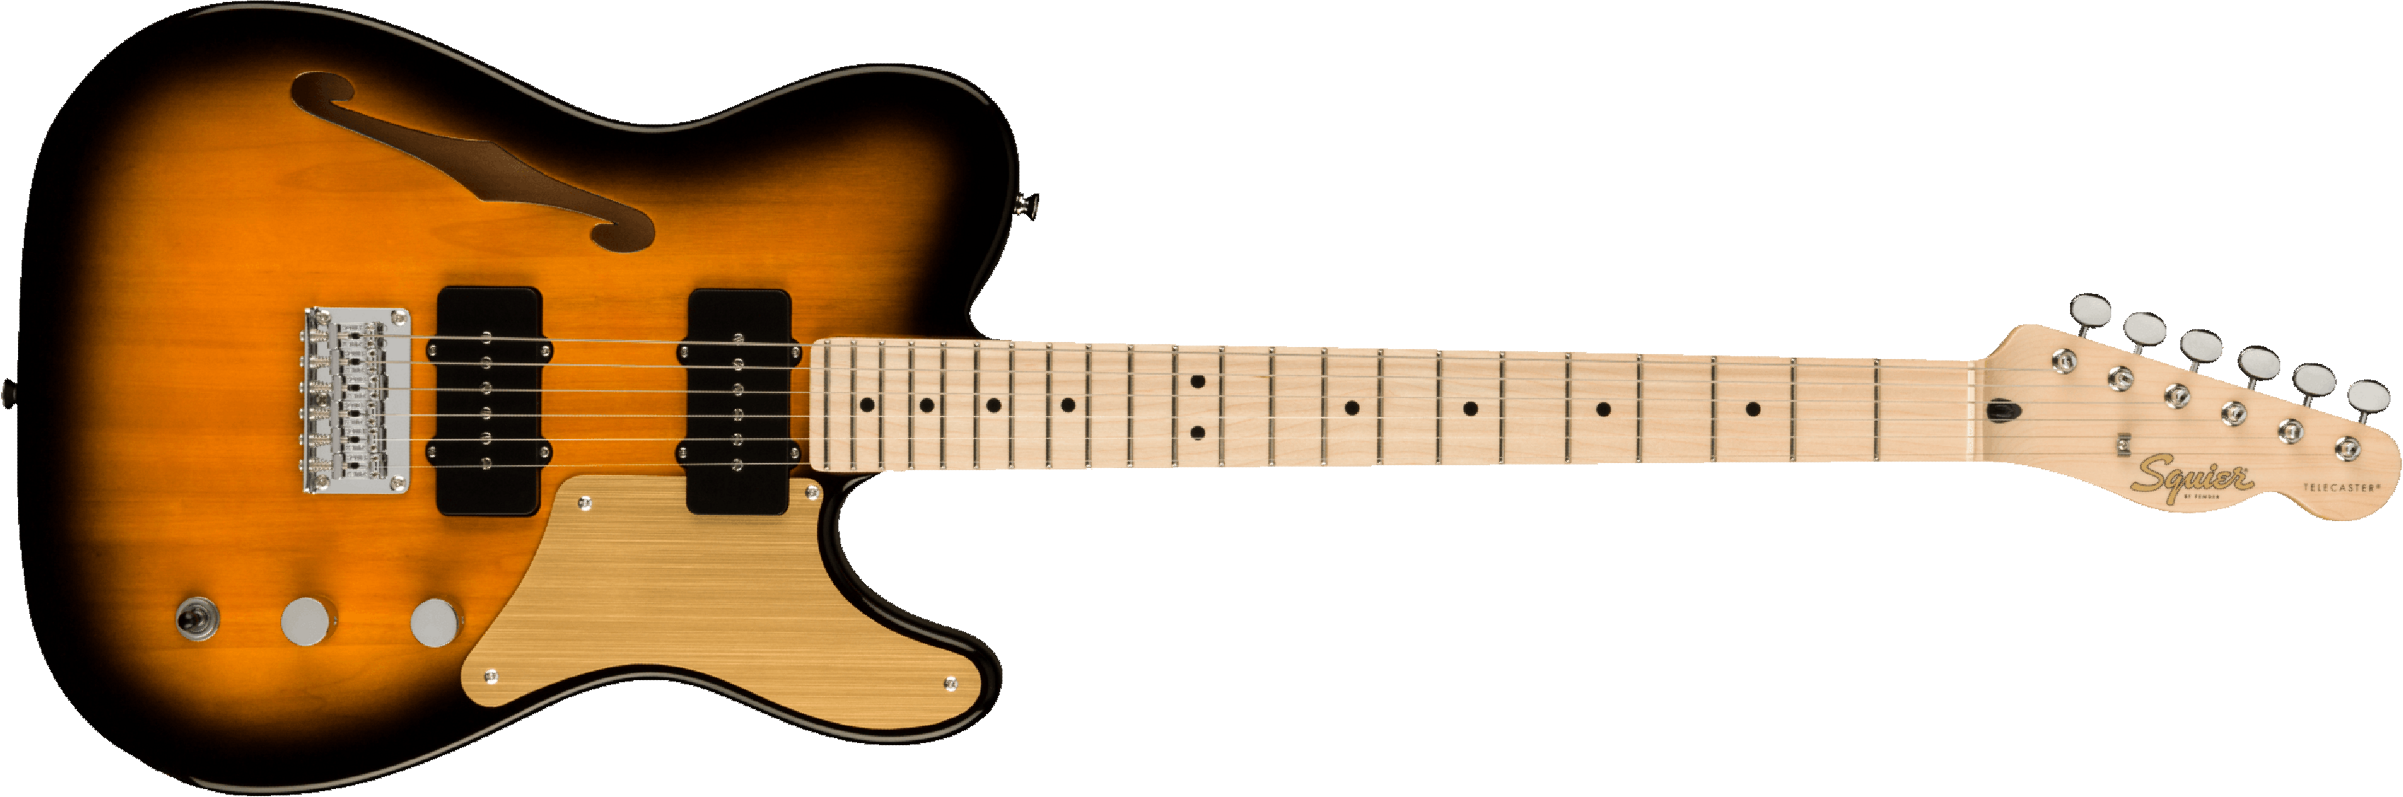 Squier Tele Thinline Cabronita Paranormal Ss Ht Mn - 2 Tone Sunburst - Televorm elektrische gitaar - Main picture